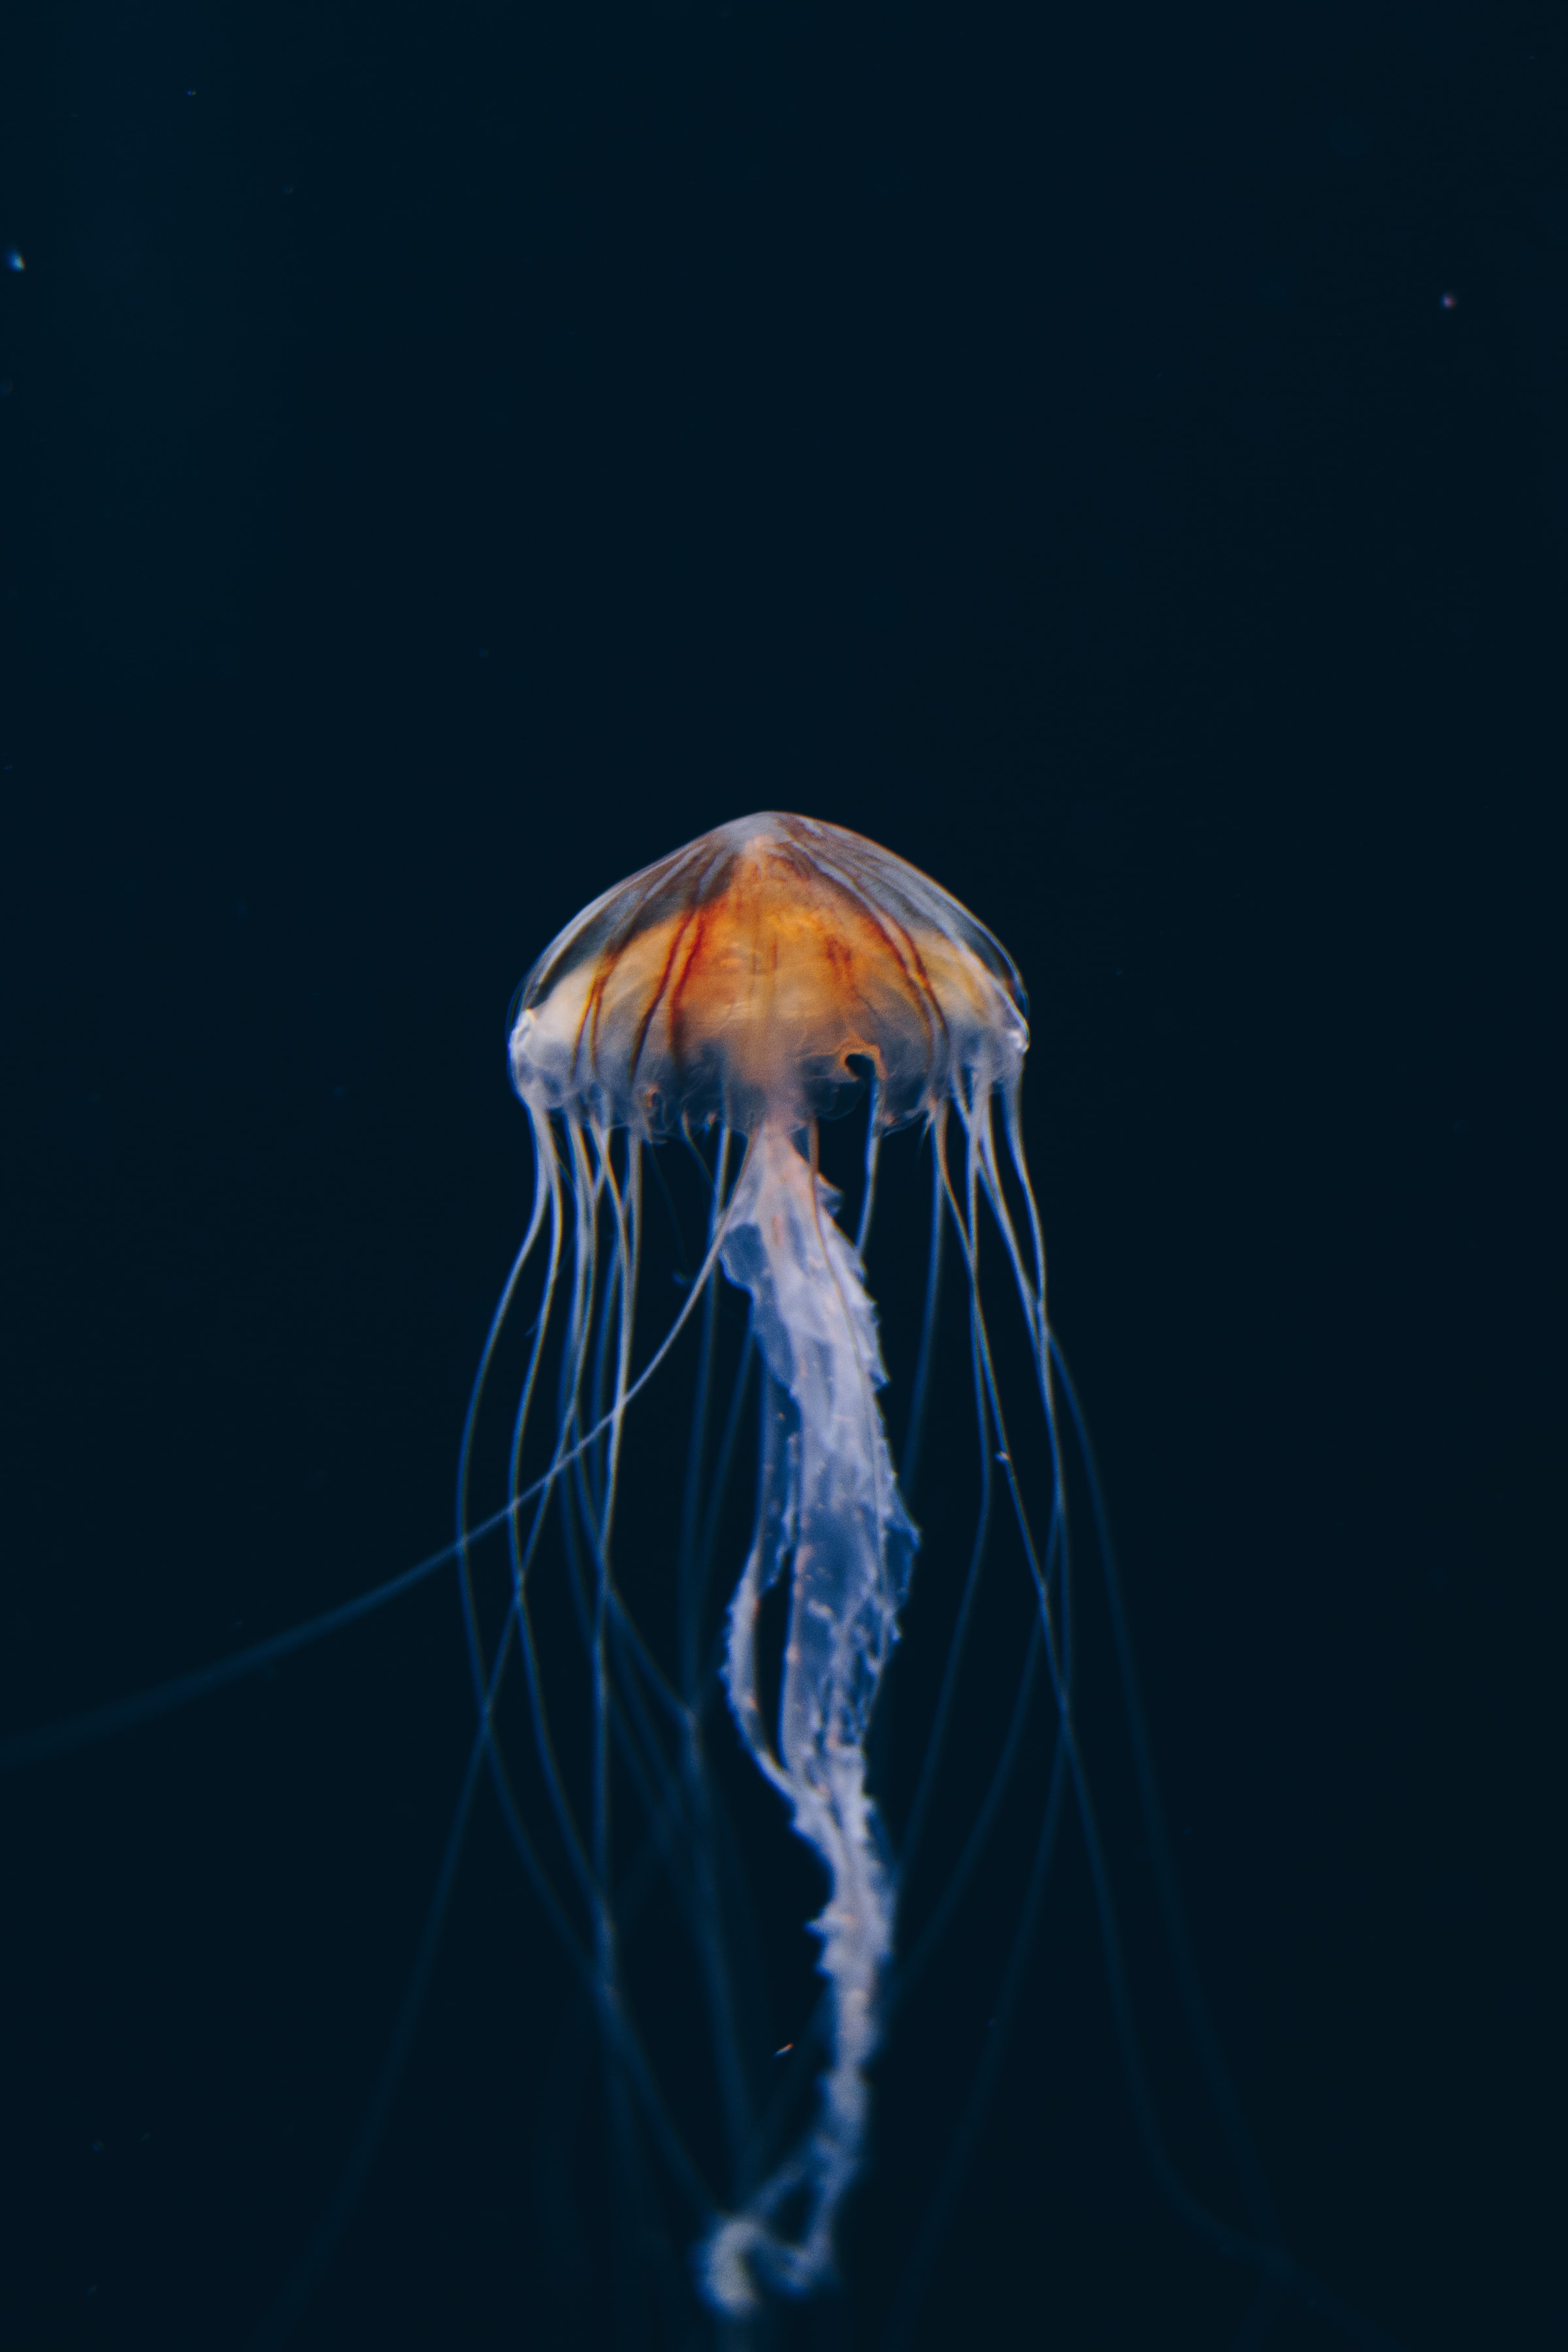 jellyfish, nature, water, dark, beautiful, underwater world Aesthetic wallpaper